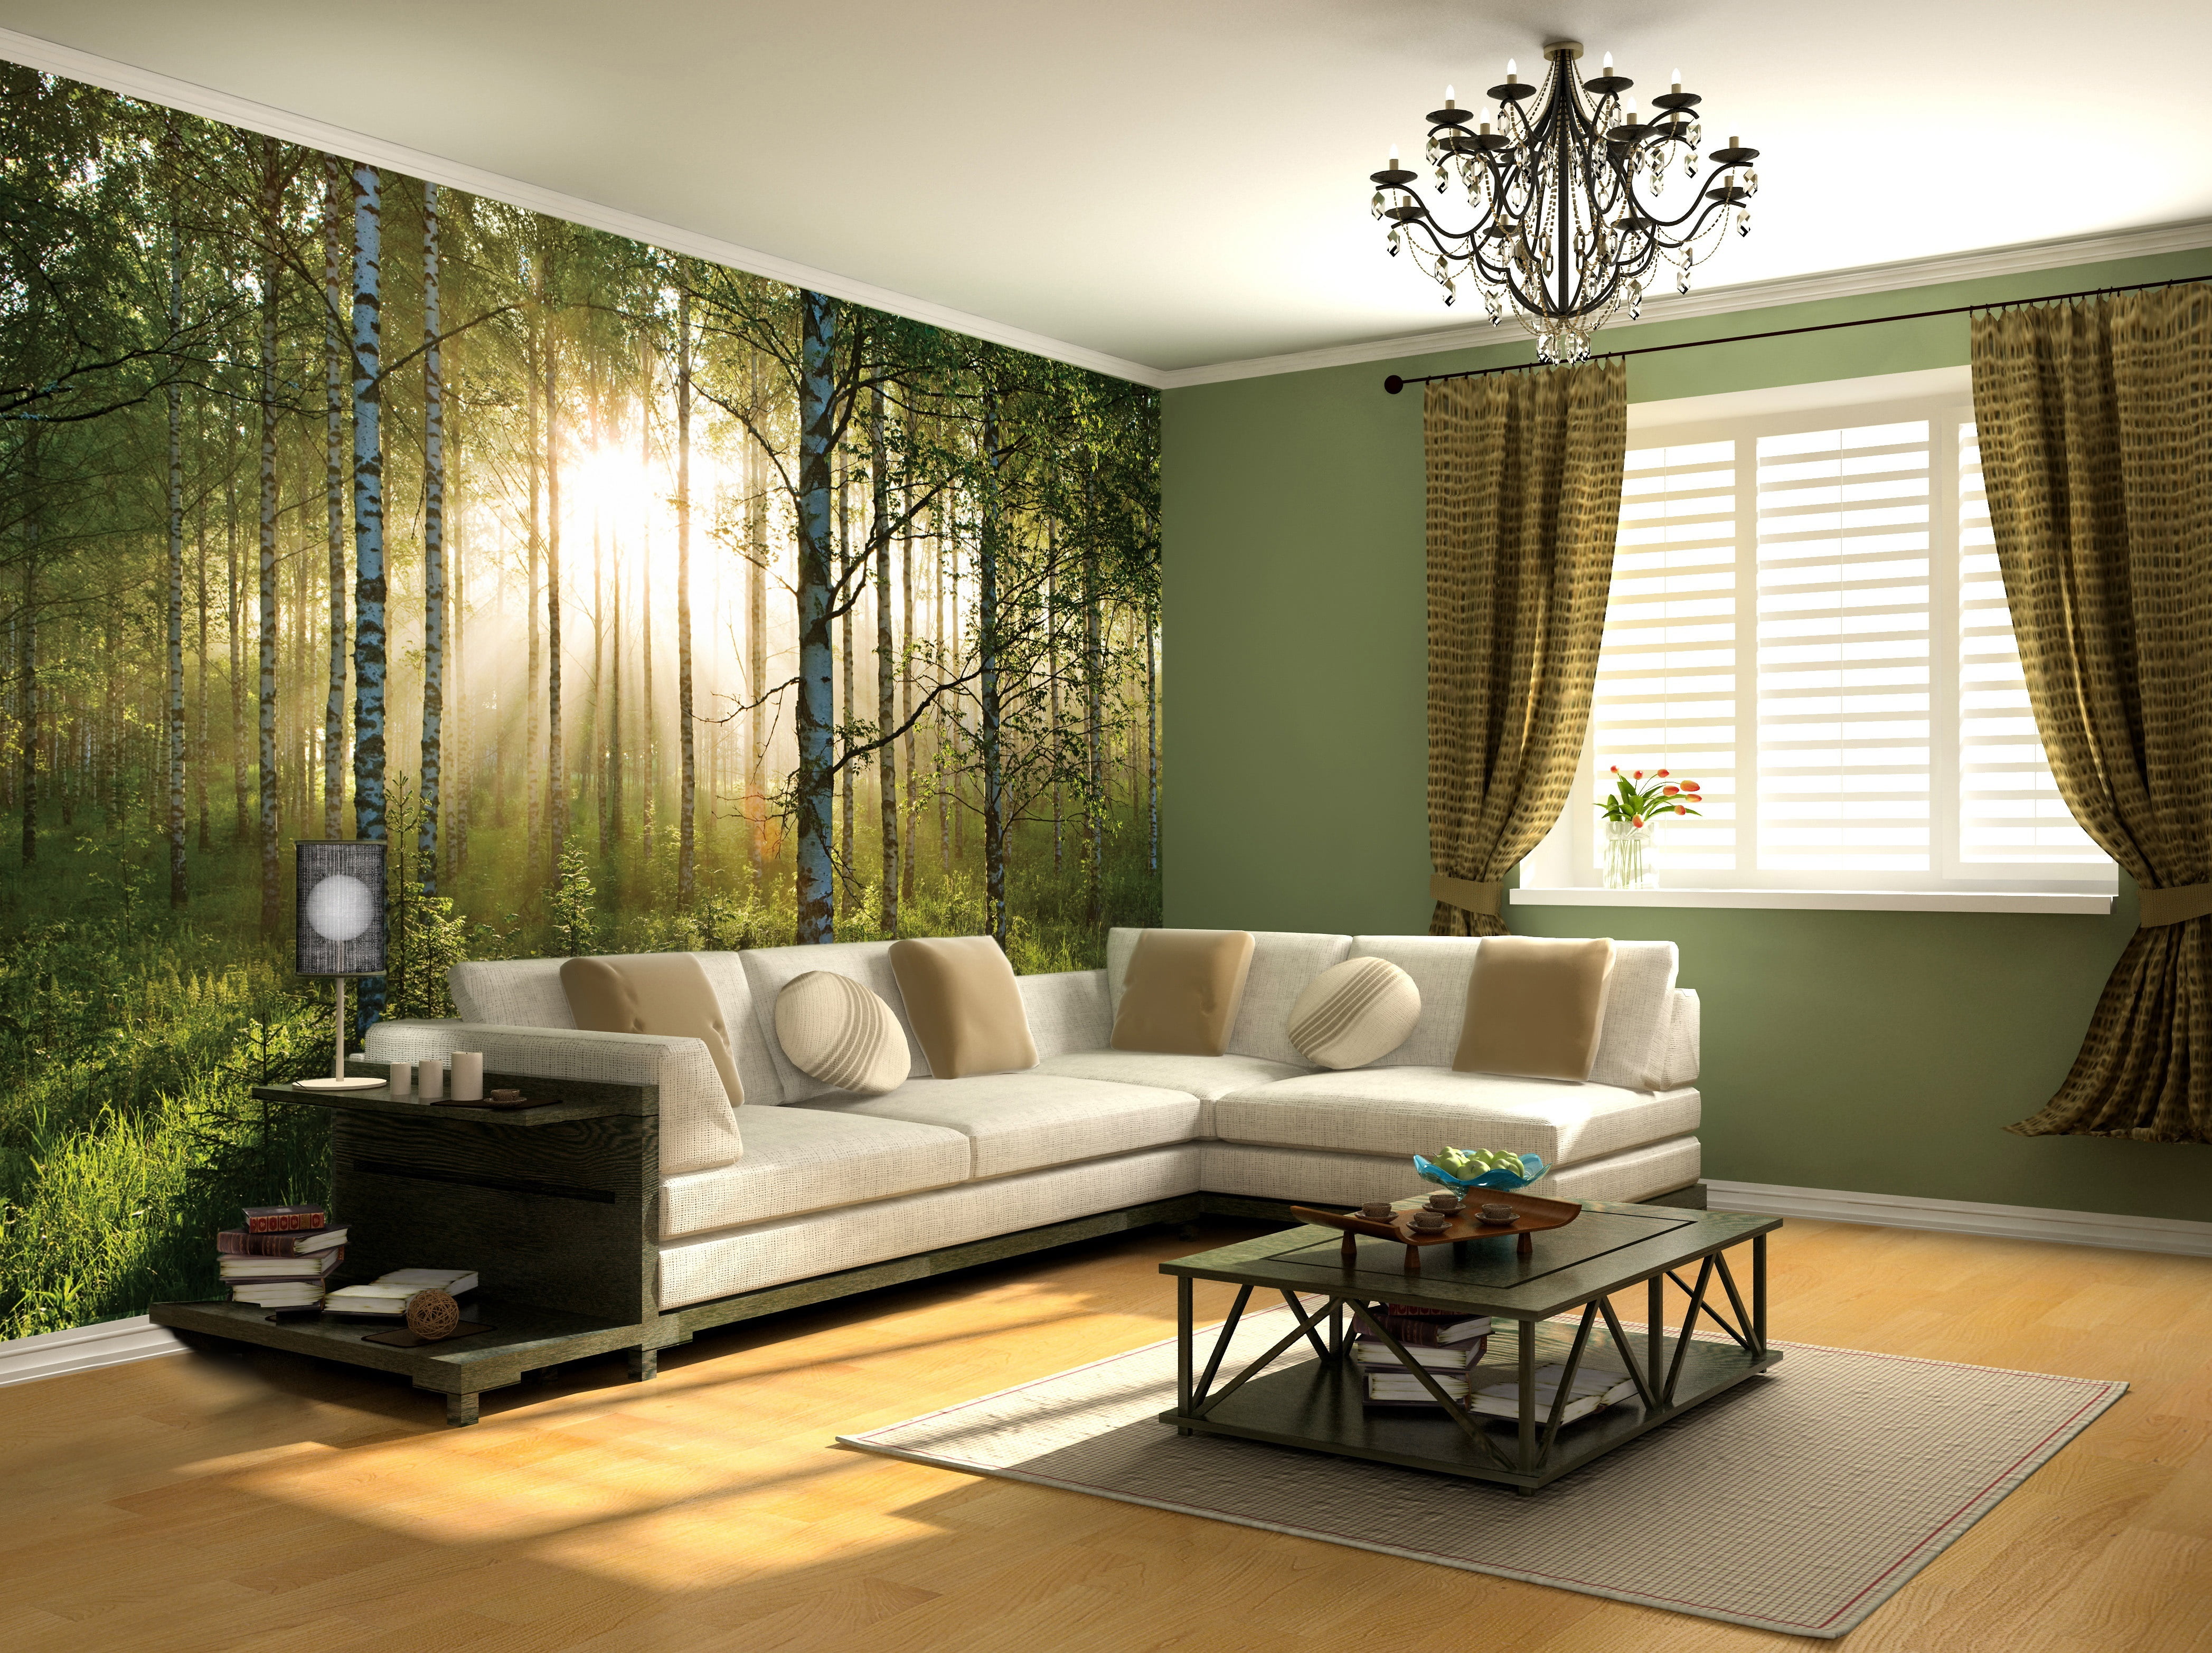 white corner sofa, design, style, room, interior, domestic Room